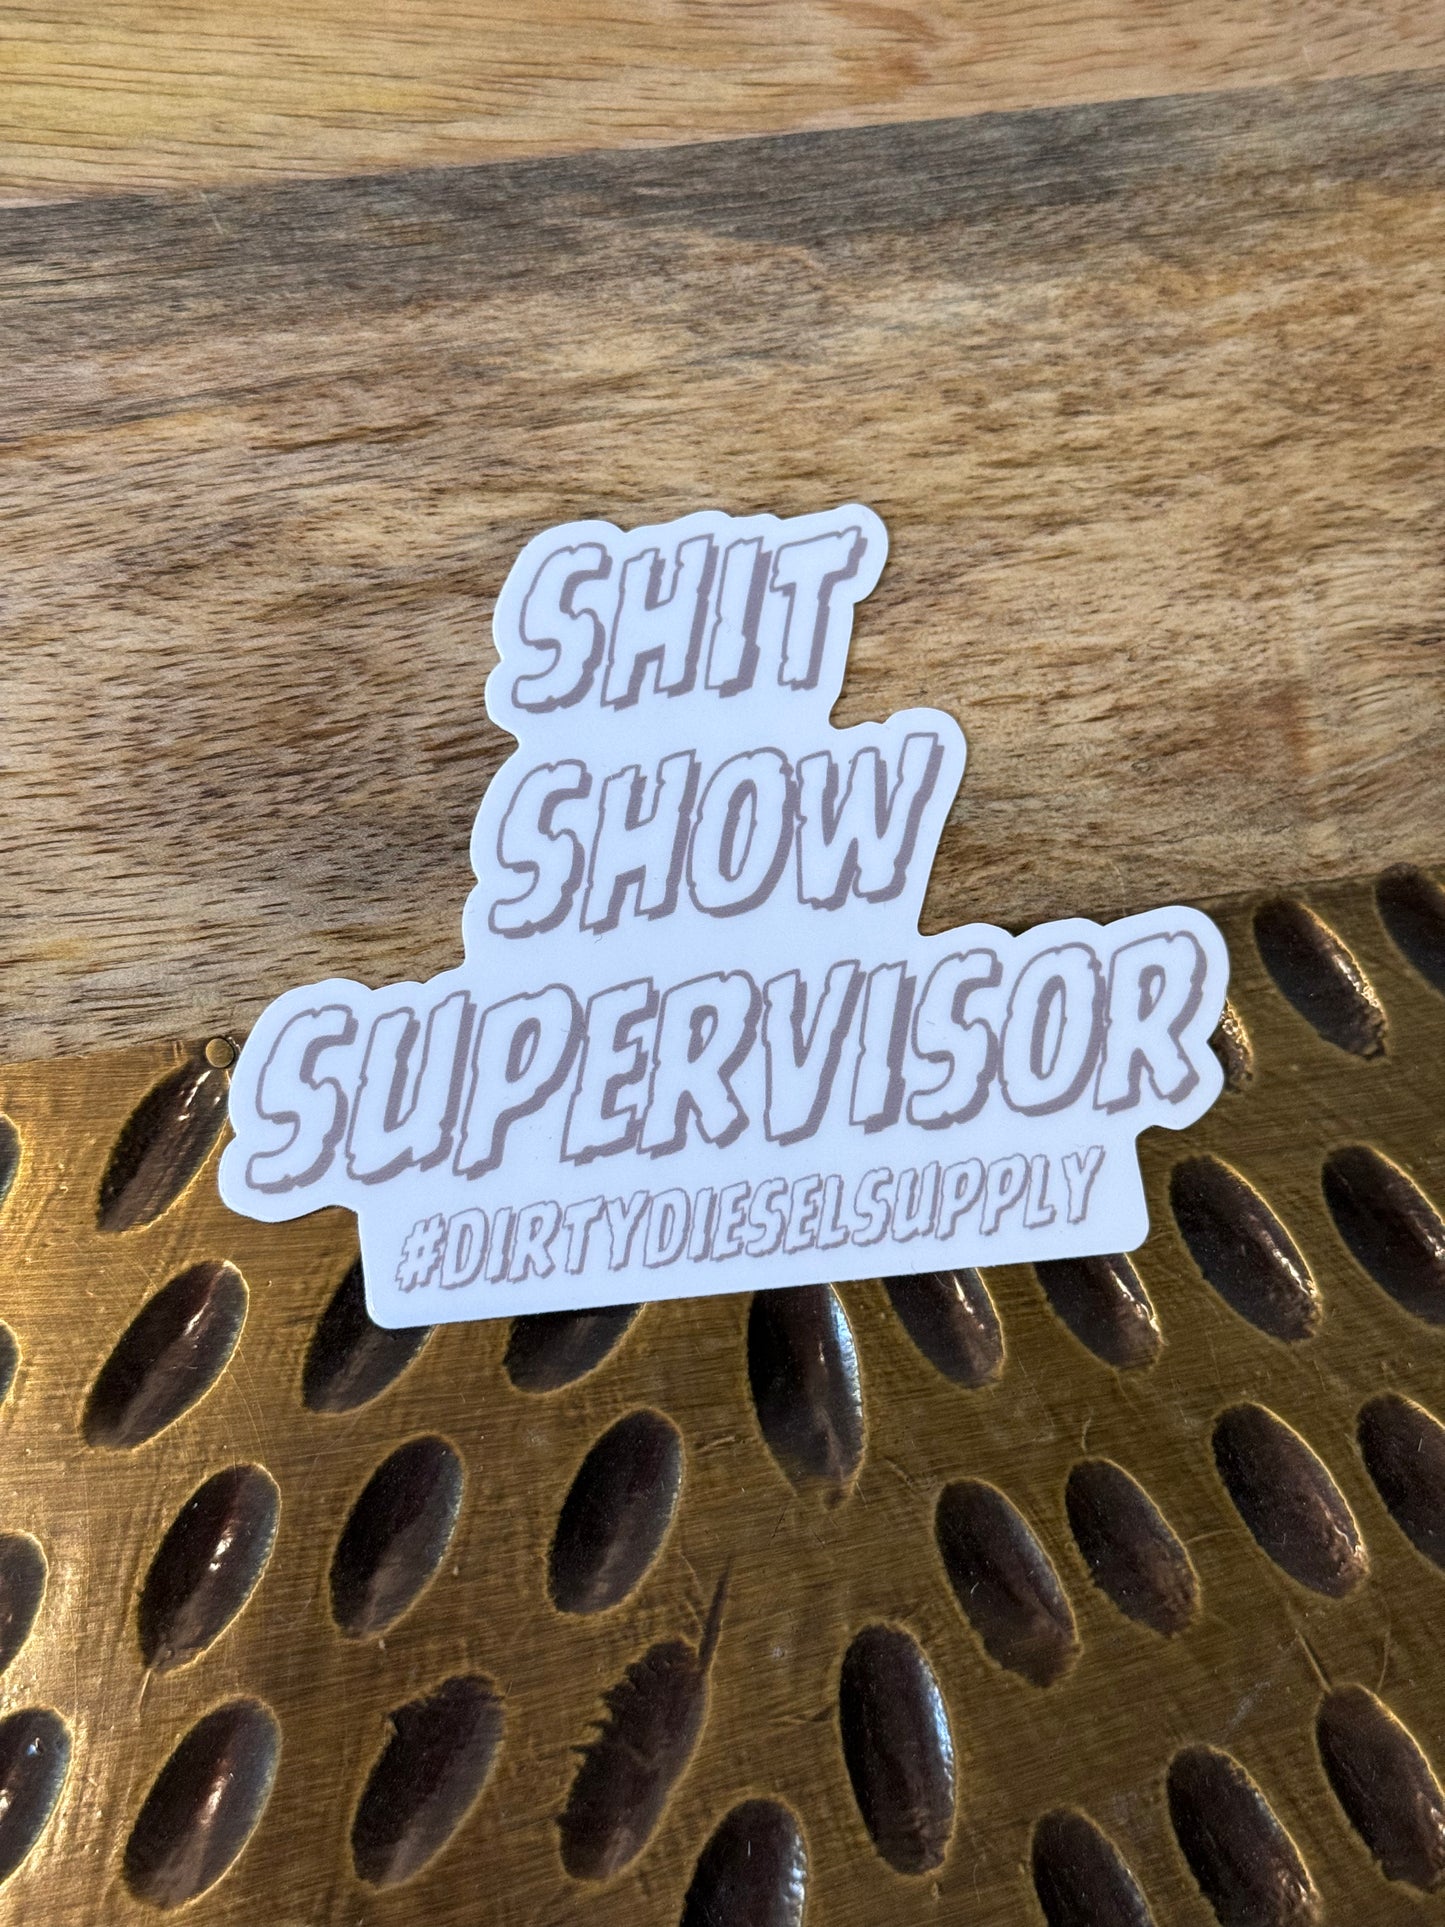 Shit Show Supervisor Sticker